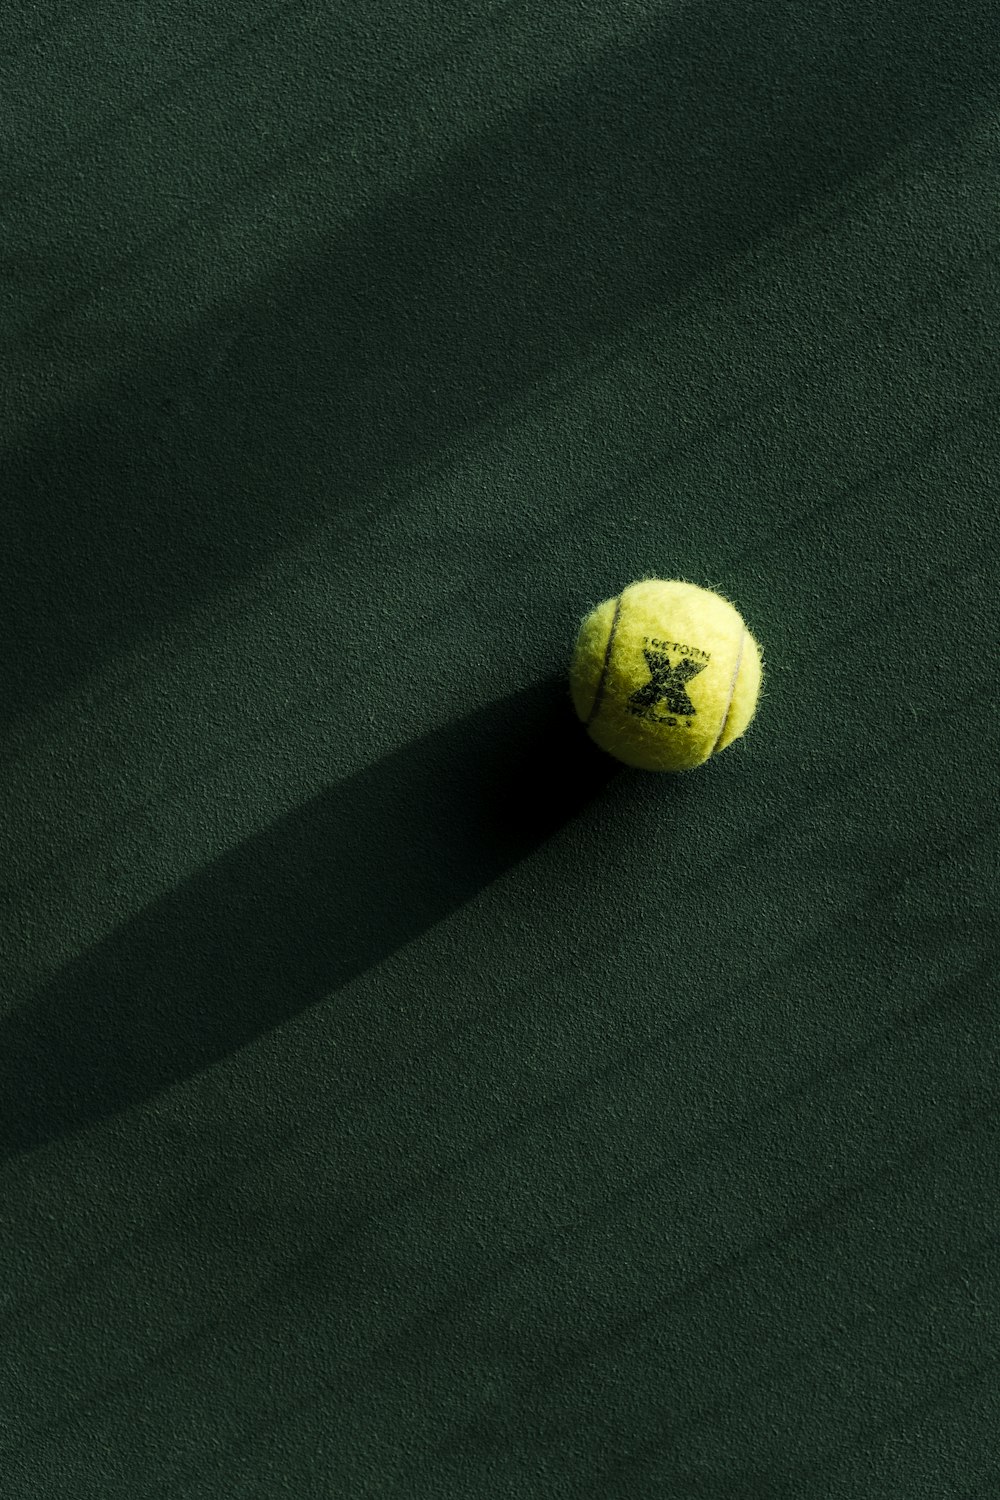 ein Tennisball auf einem grünen Platz mit einem Schatten